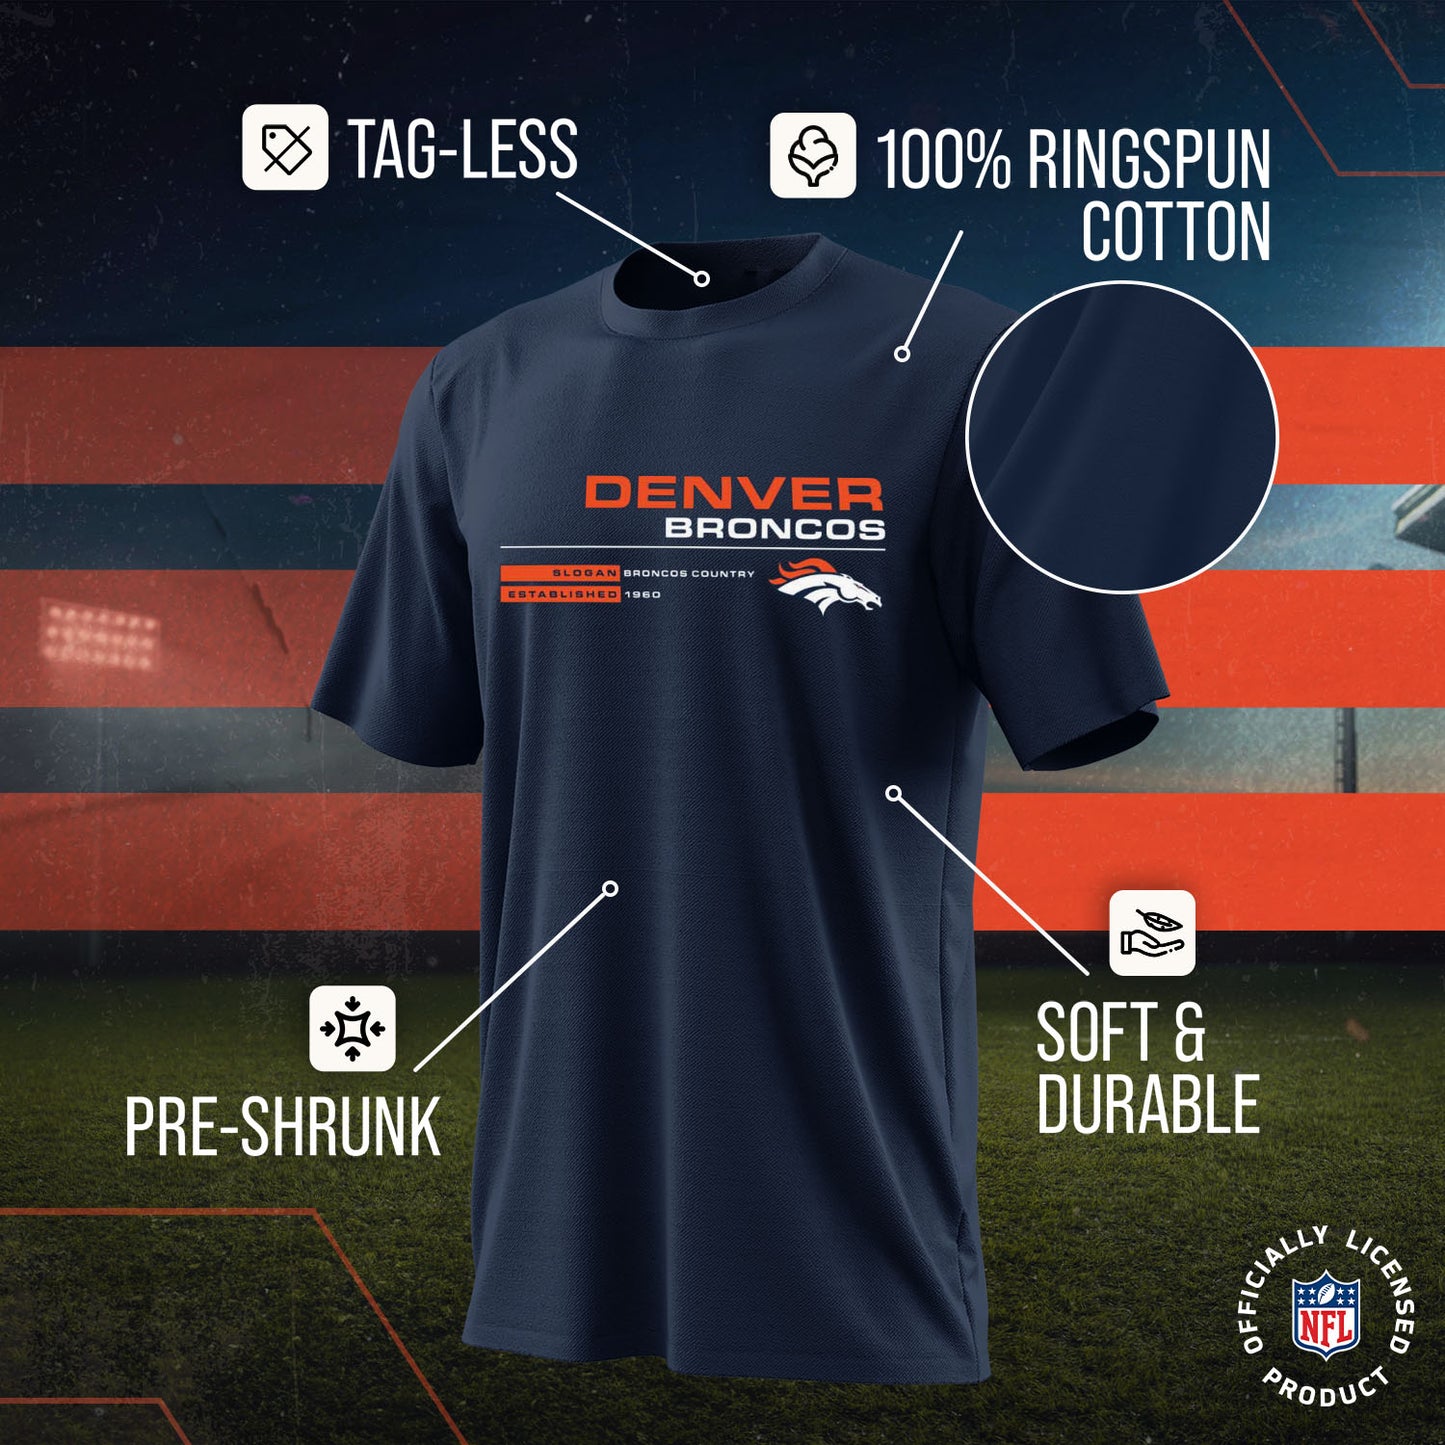 Denver Broncos Adult NFL Speed Stat Sheet T-Shirt - Navy